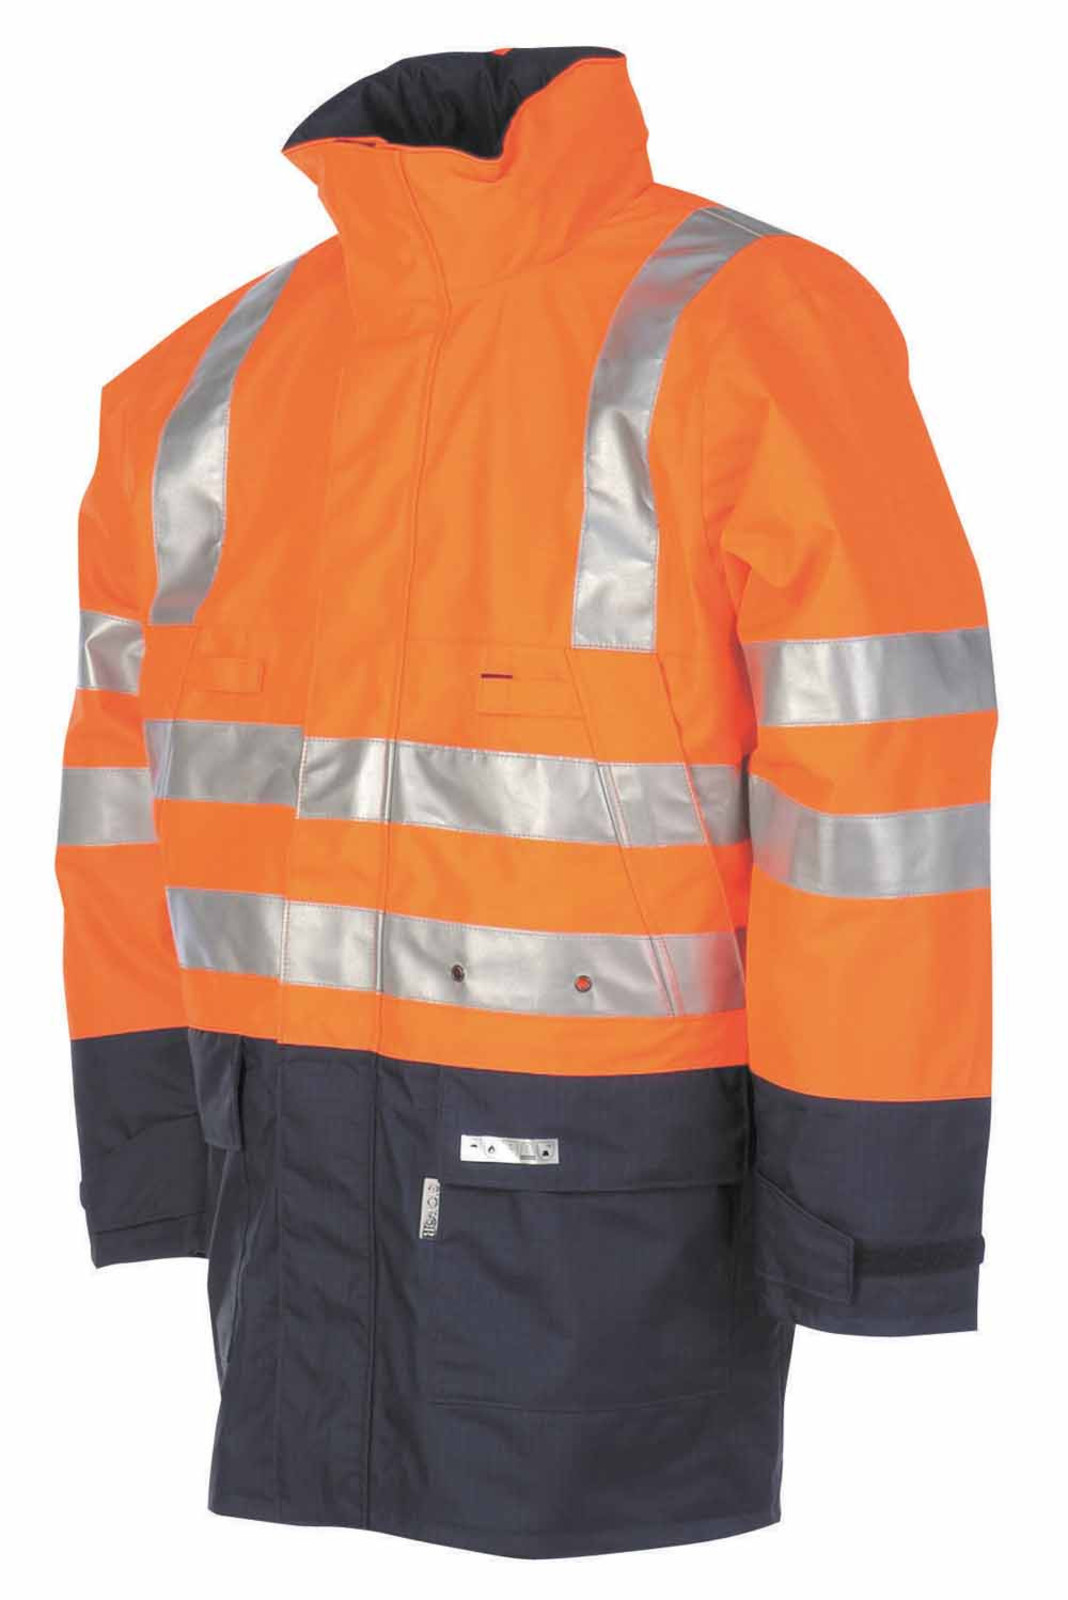 Antistatická ohňuvdzdorná bunda Winseler - veľkosť: S, farba: oranžová